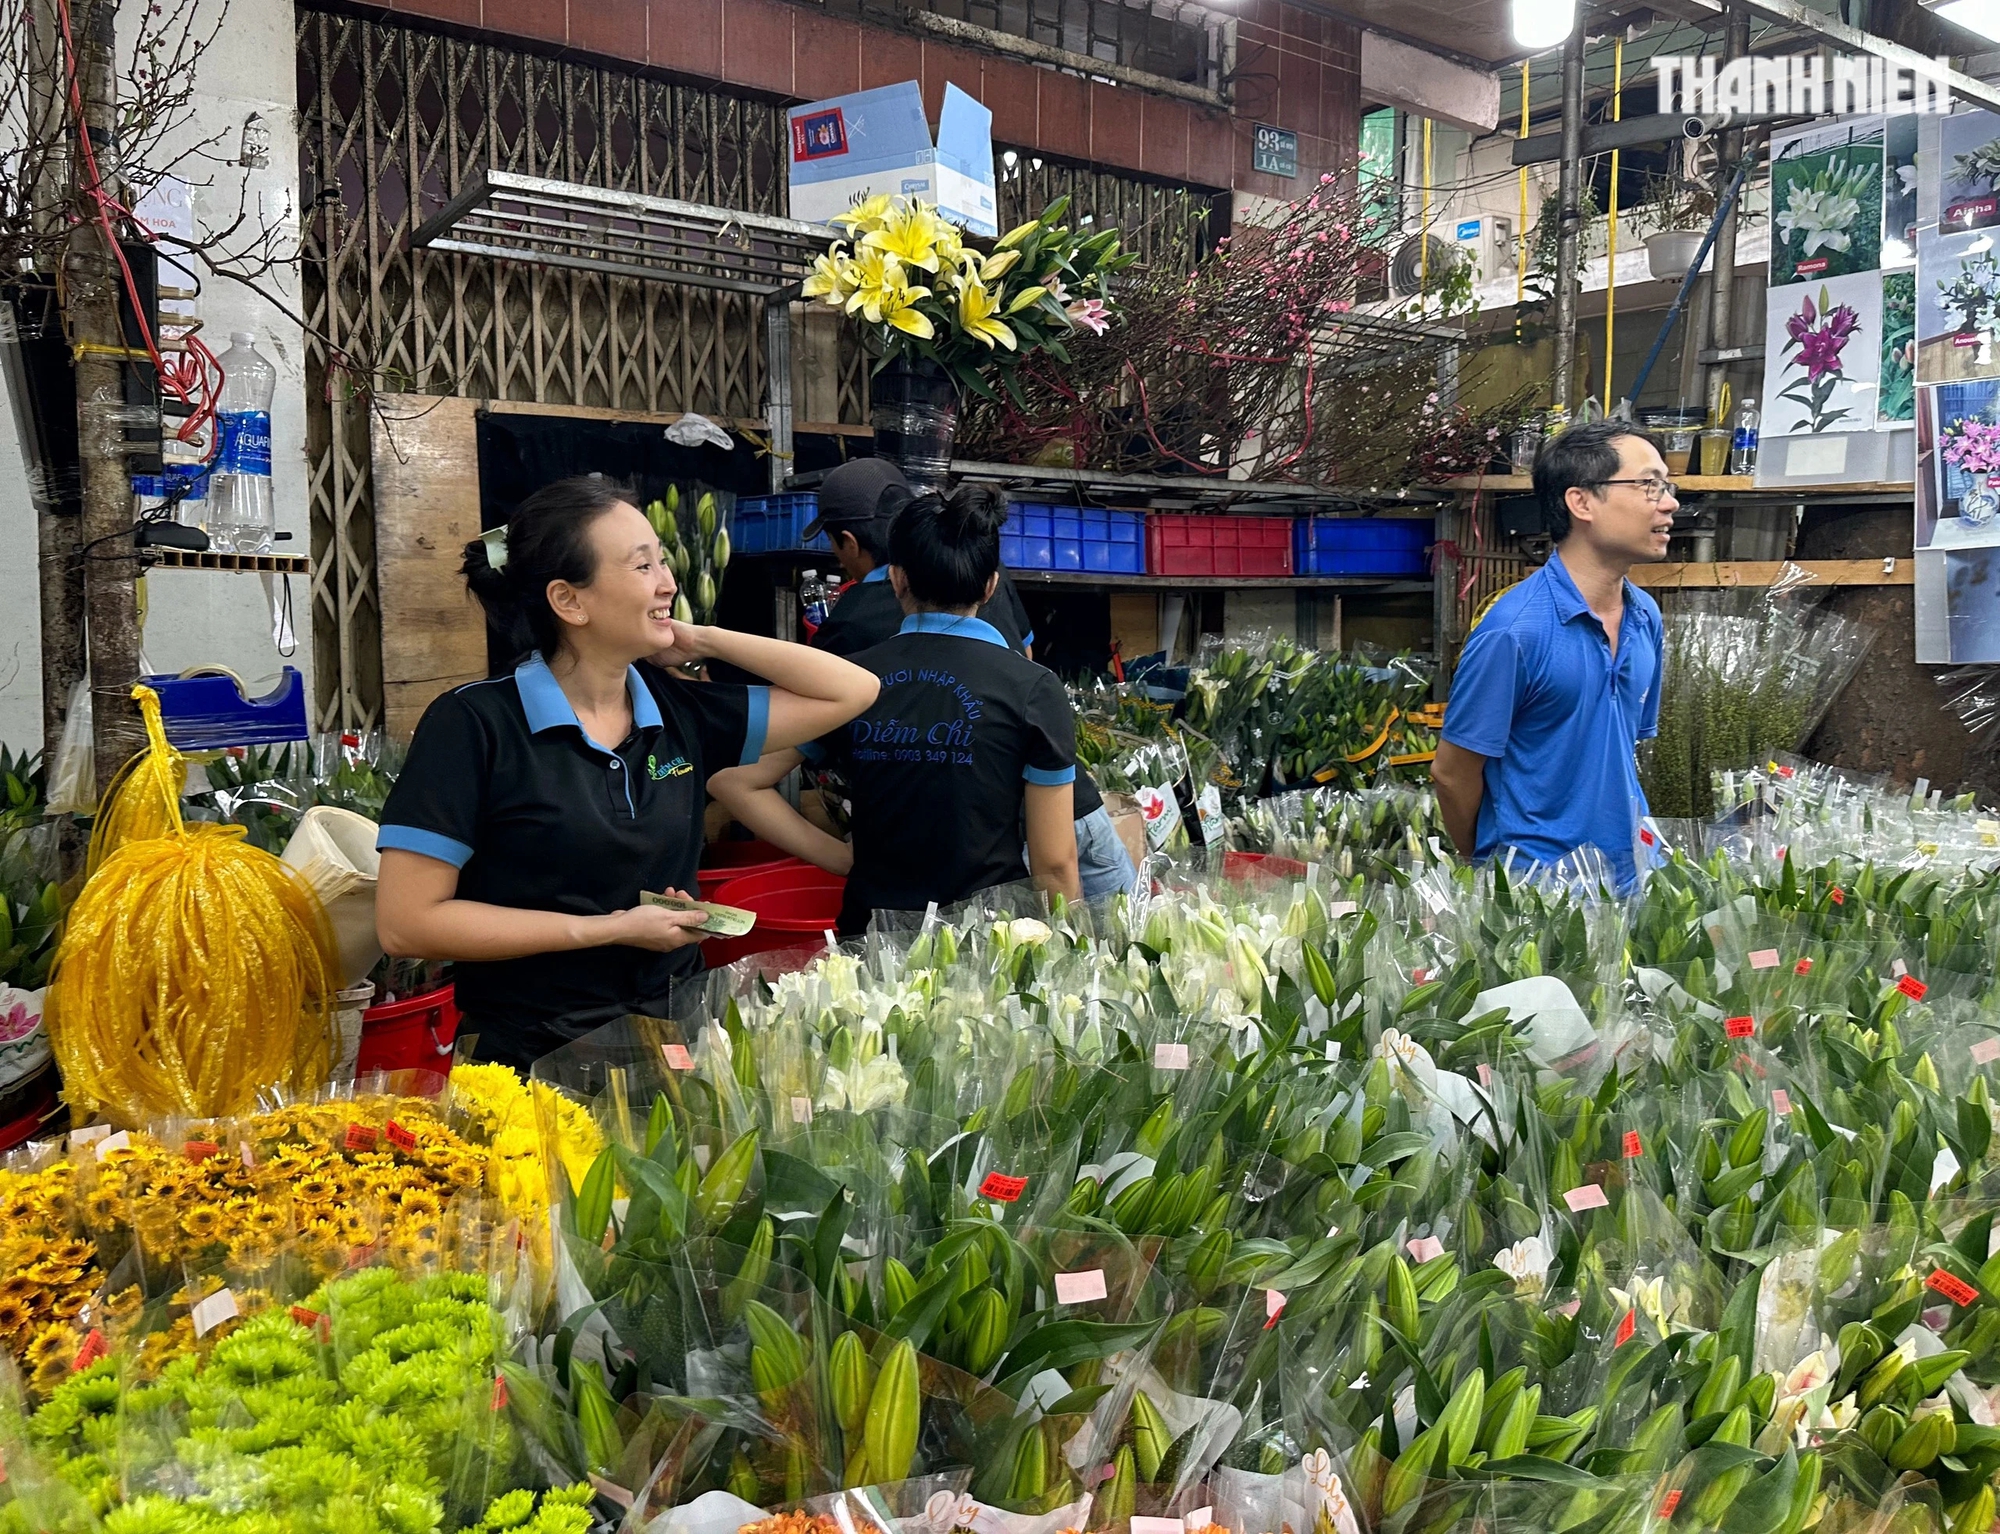 Sáng 29 tết chợ hoa lớn nhất TP.HCM 'kẹt cứng': Đông nghẹt người mua hoa cho giao thừa- Ảnh 3.